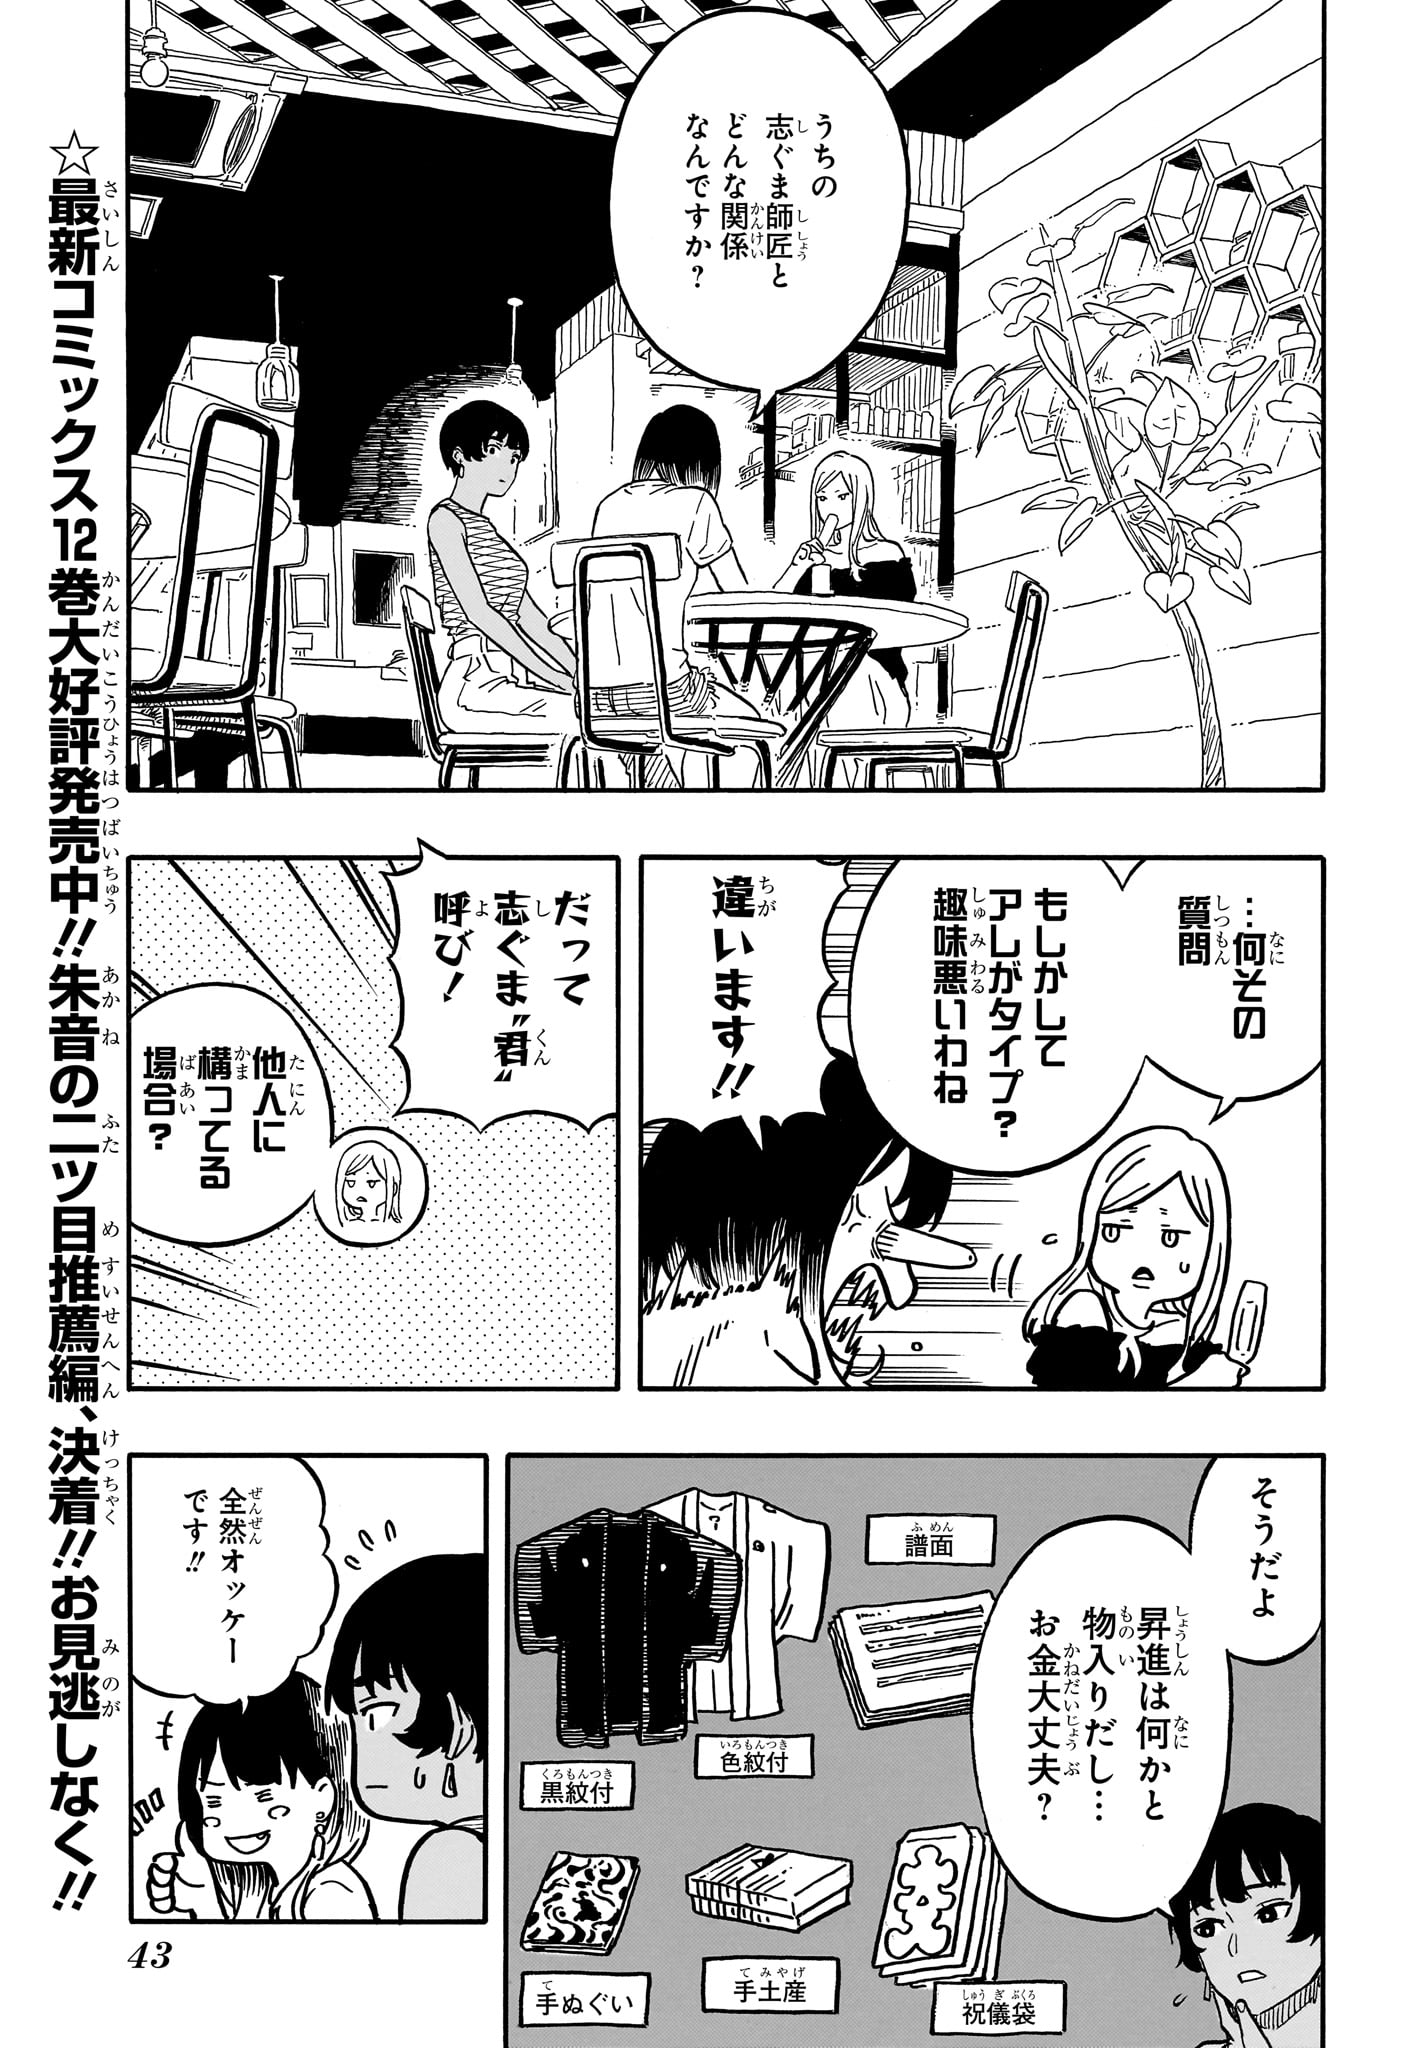 Akane-Banashi - Chapter 119 - Page 5